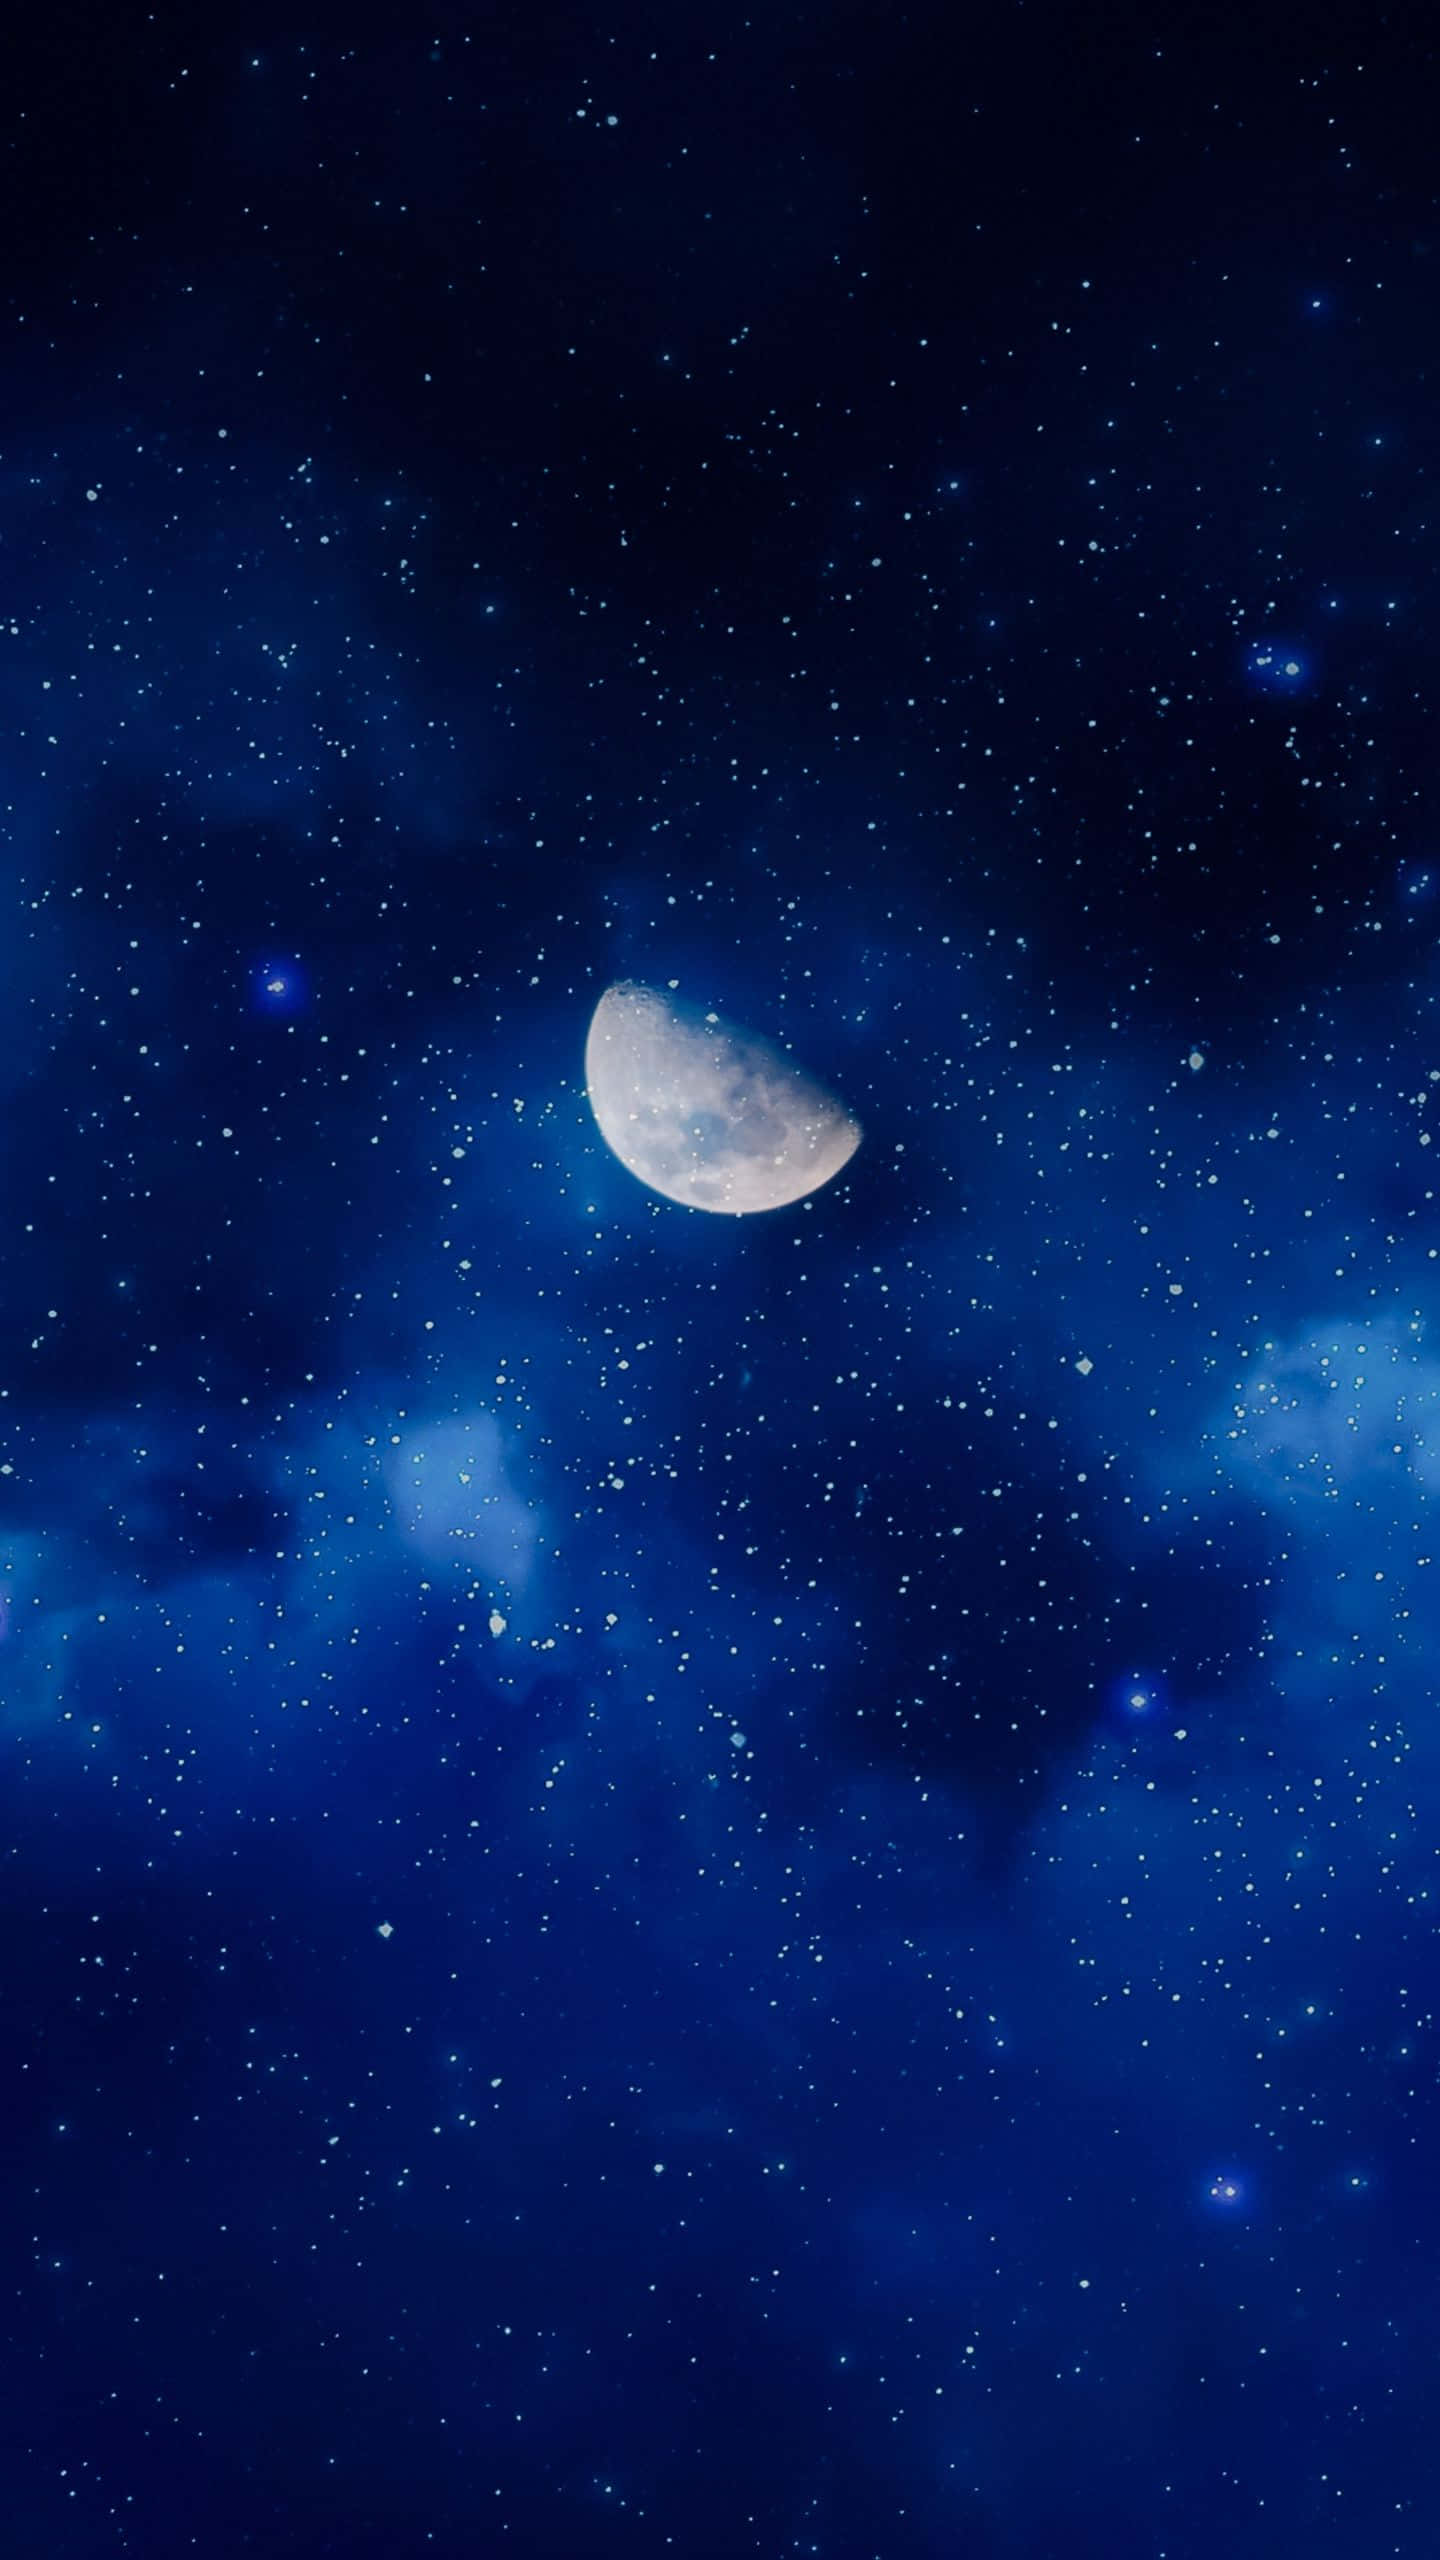 Moon and stars illuminating the night sky